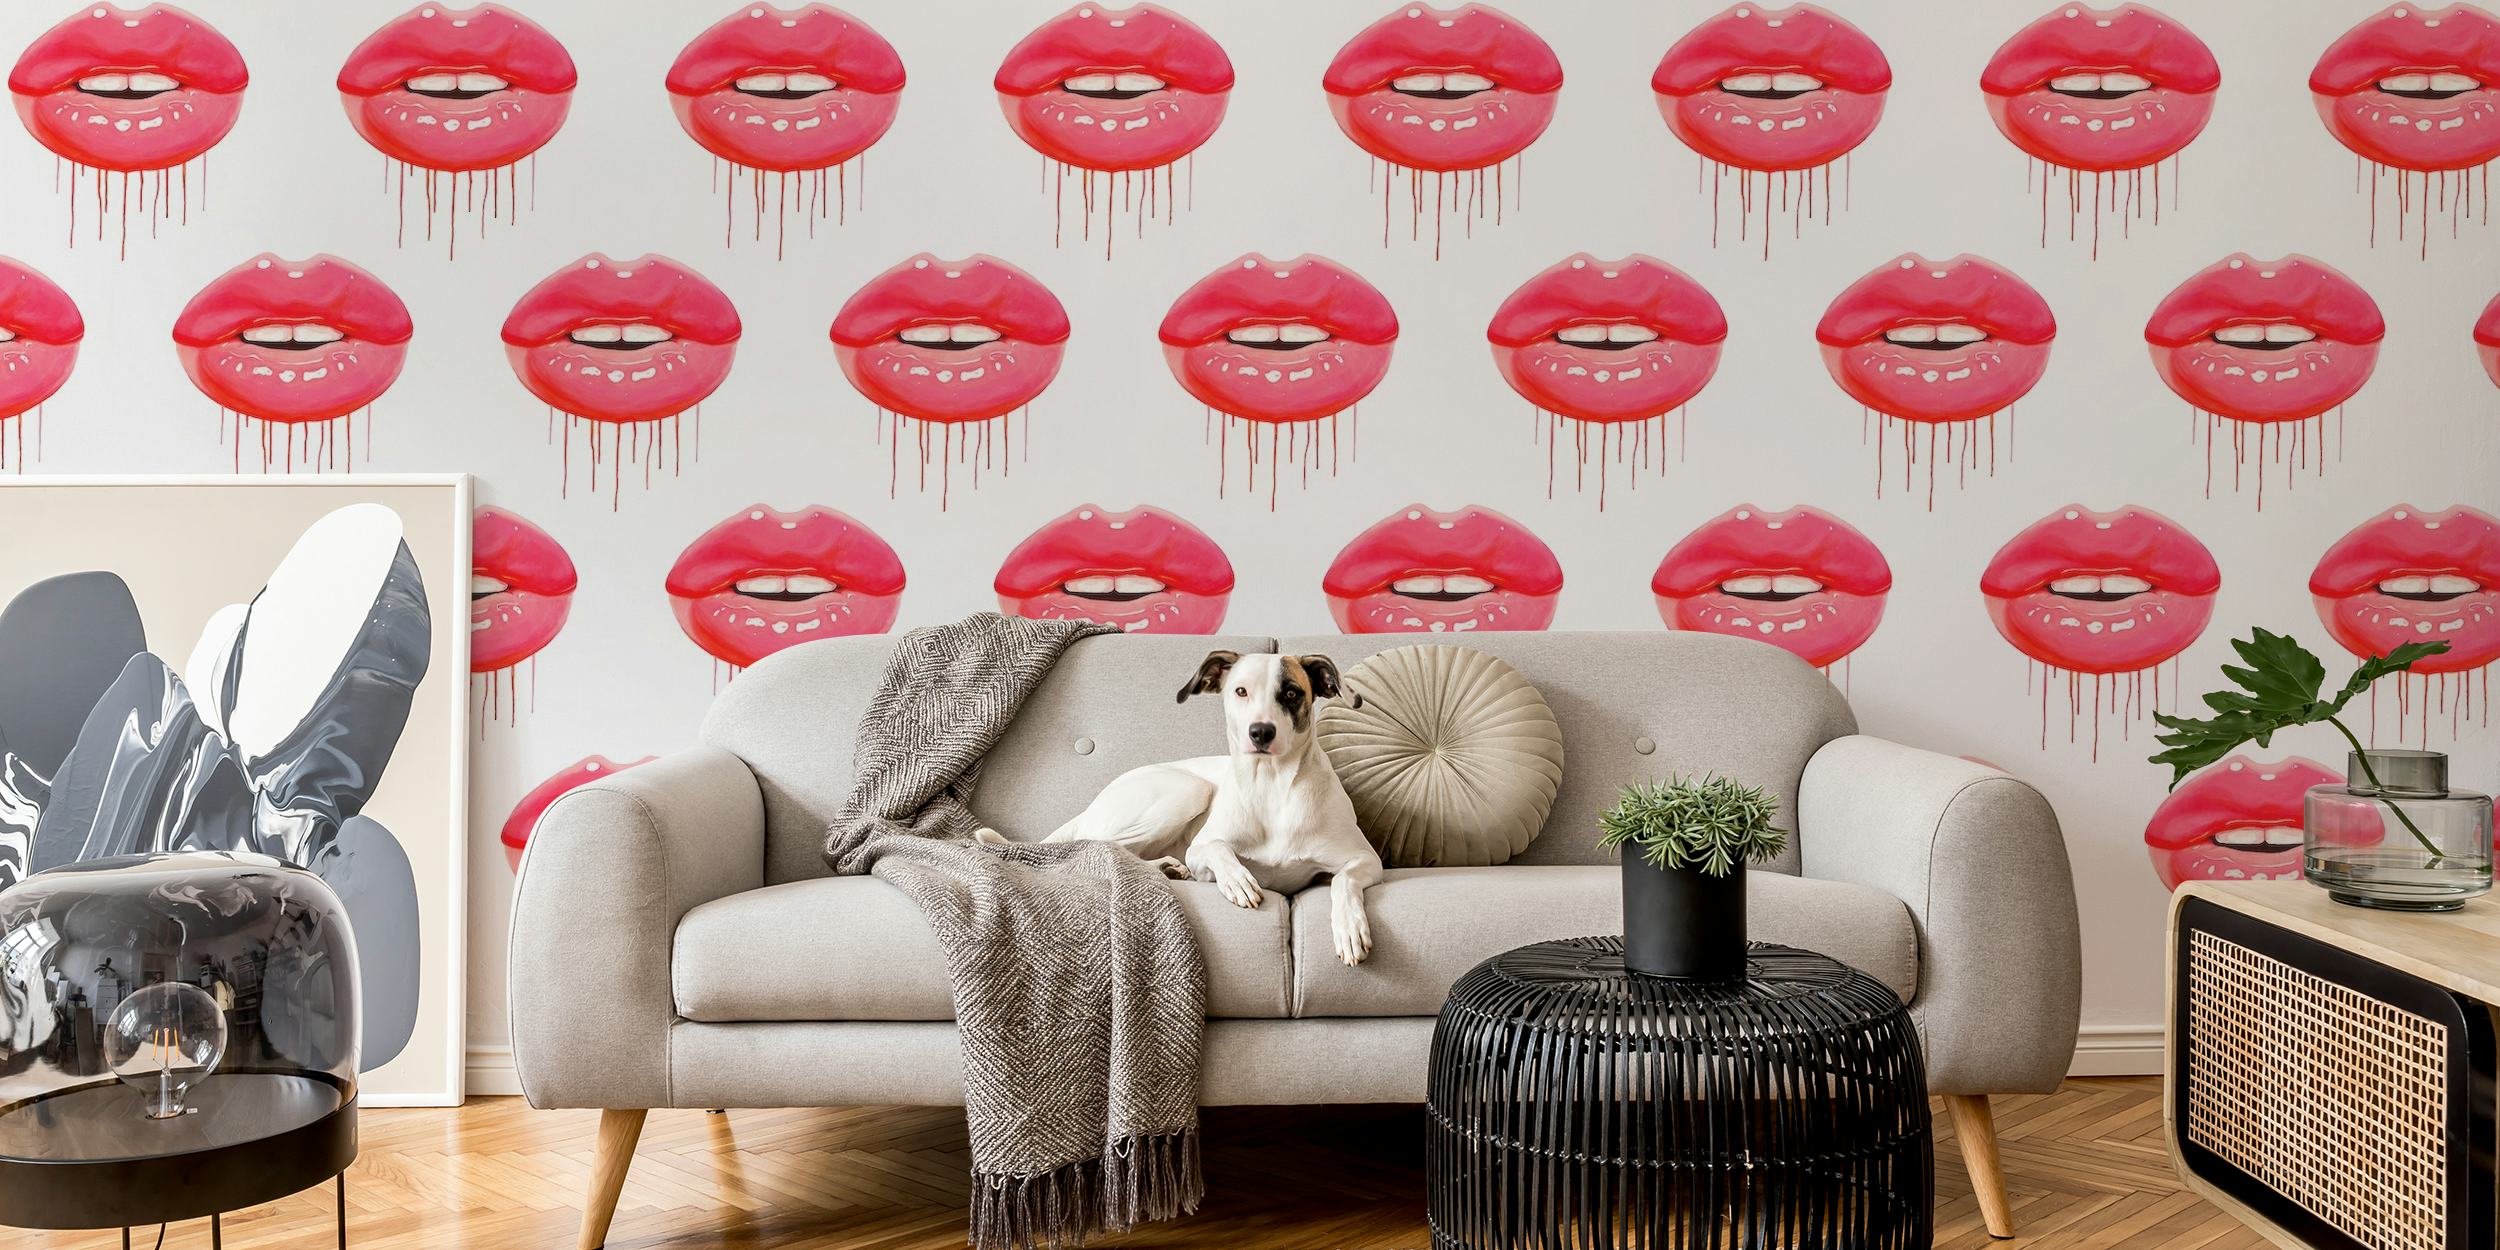 Muurschildering met rode lippenpatroon met repetitieve rode lipafdrukken op een witte achtergrond